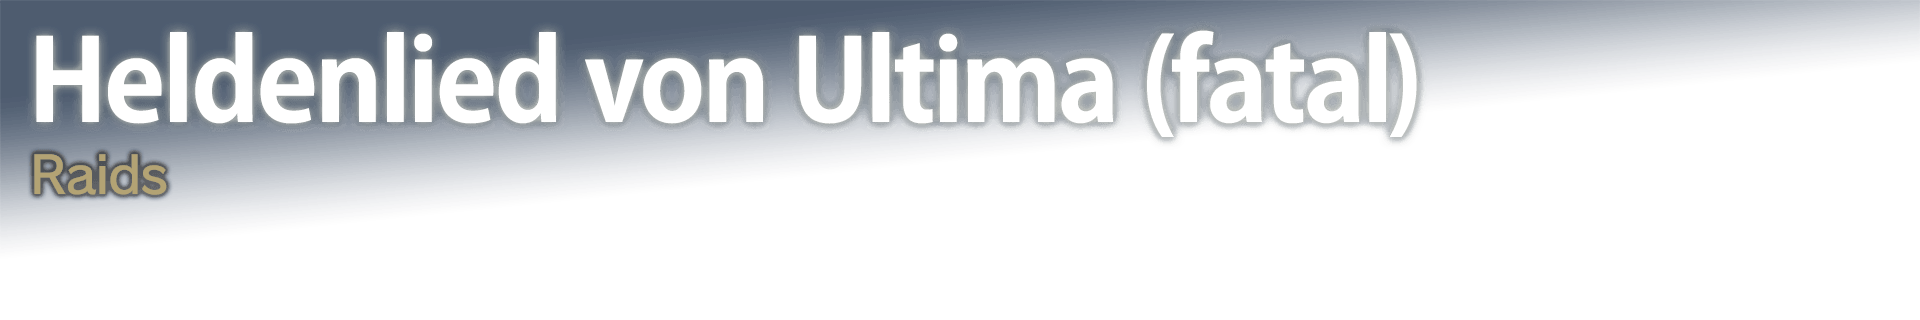 Heldenlied von Ultima (fatal) Raids